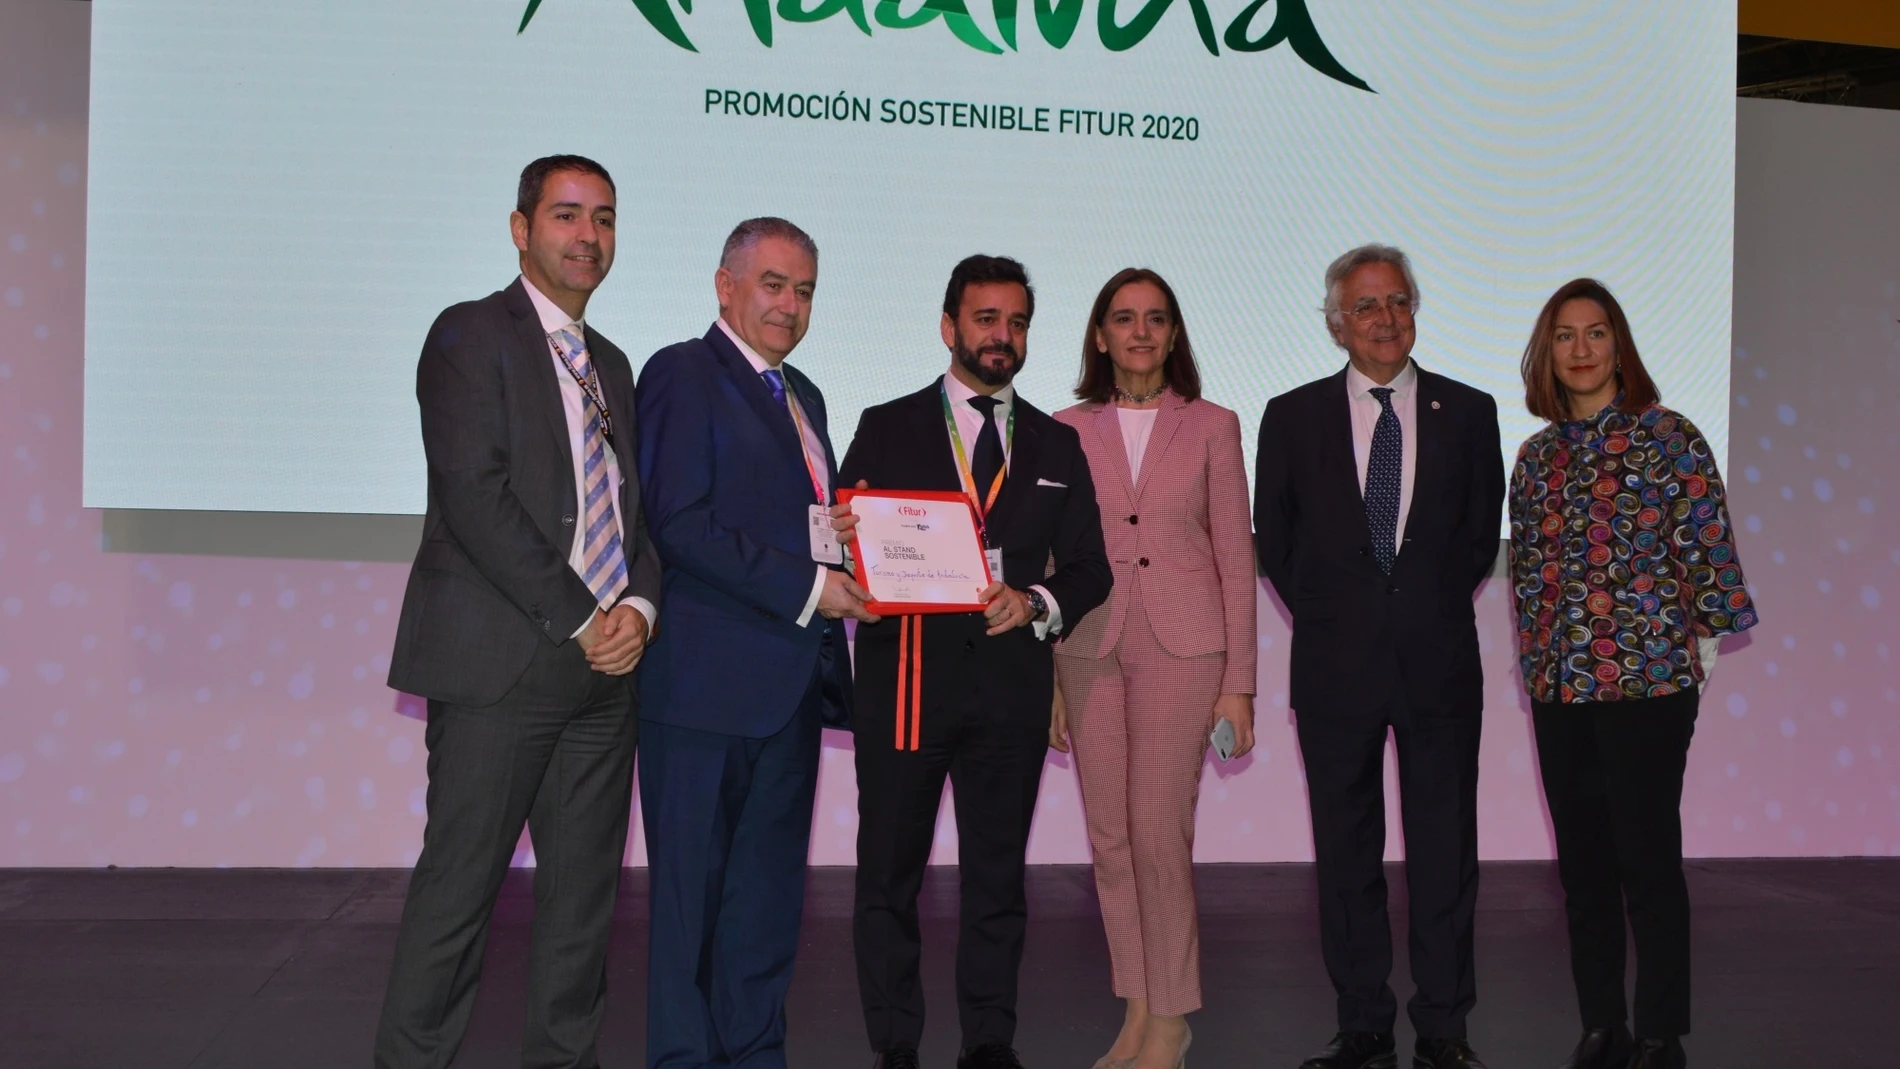 Turismo.-Fitur.-Andalucía recibe el premio al expositor sostenible por su apuesta por la reducción del impacto ambiental